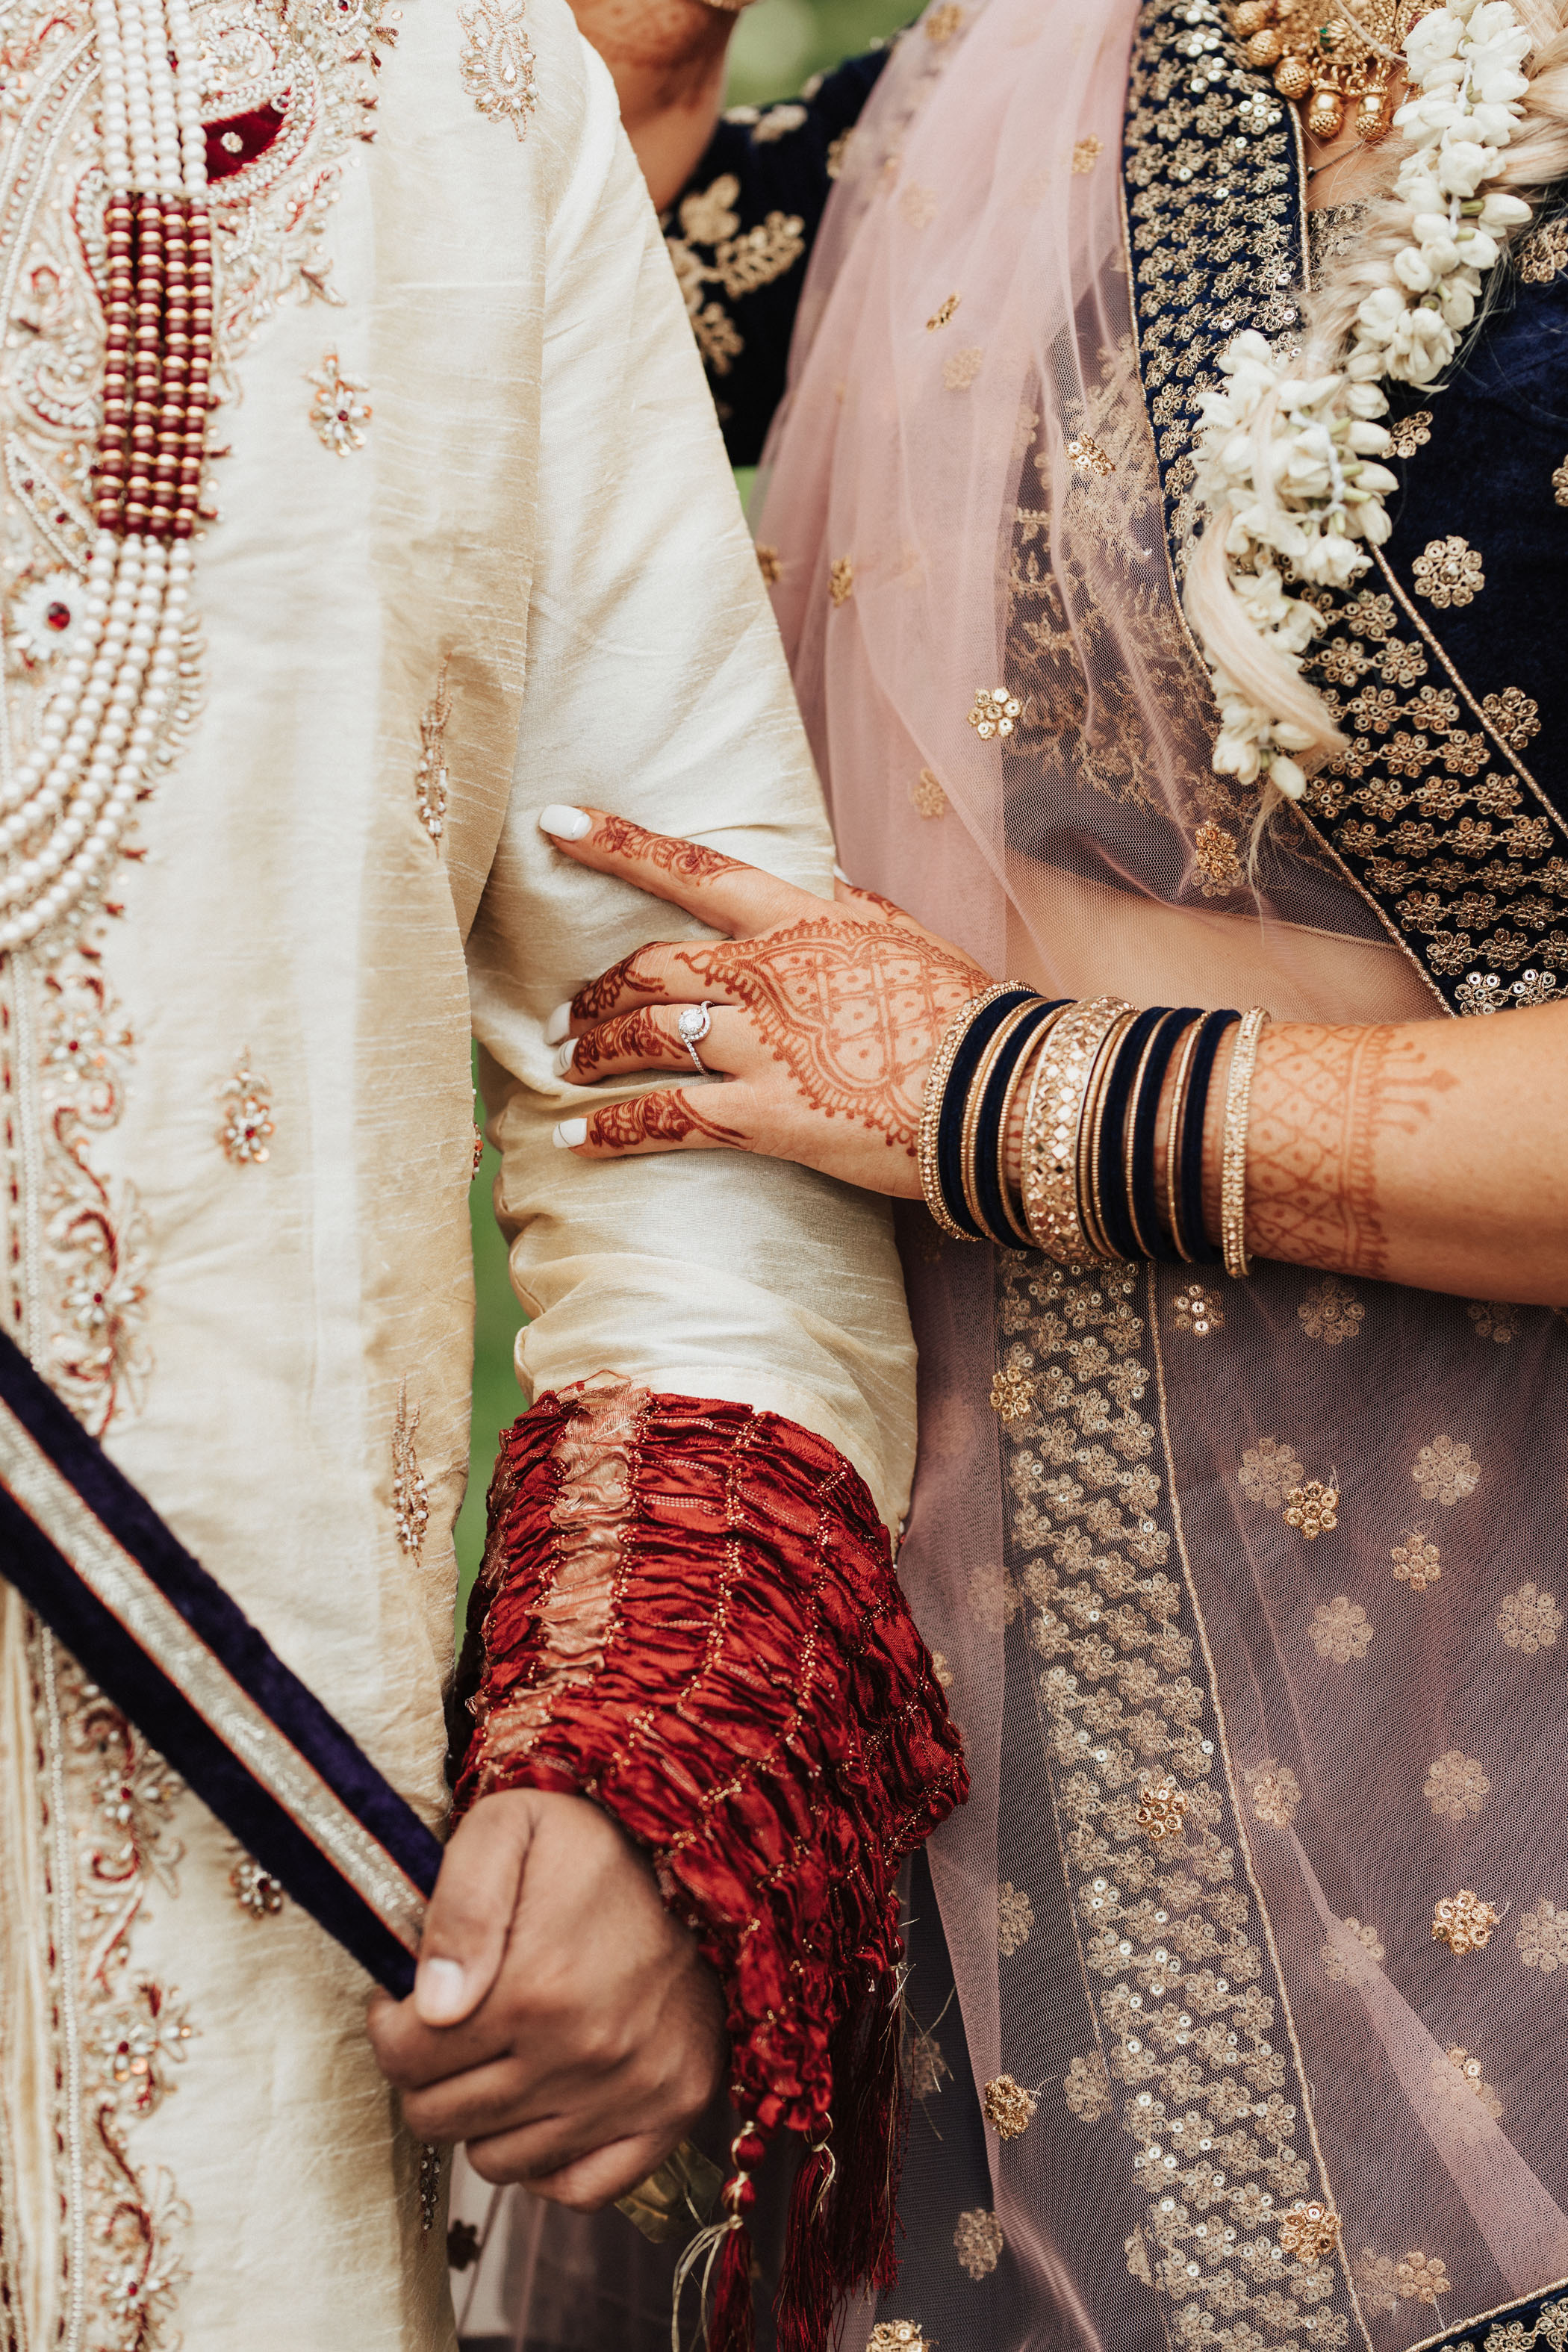 Indian-Western Hybrid Wedding